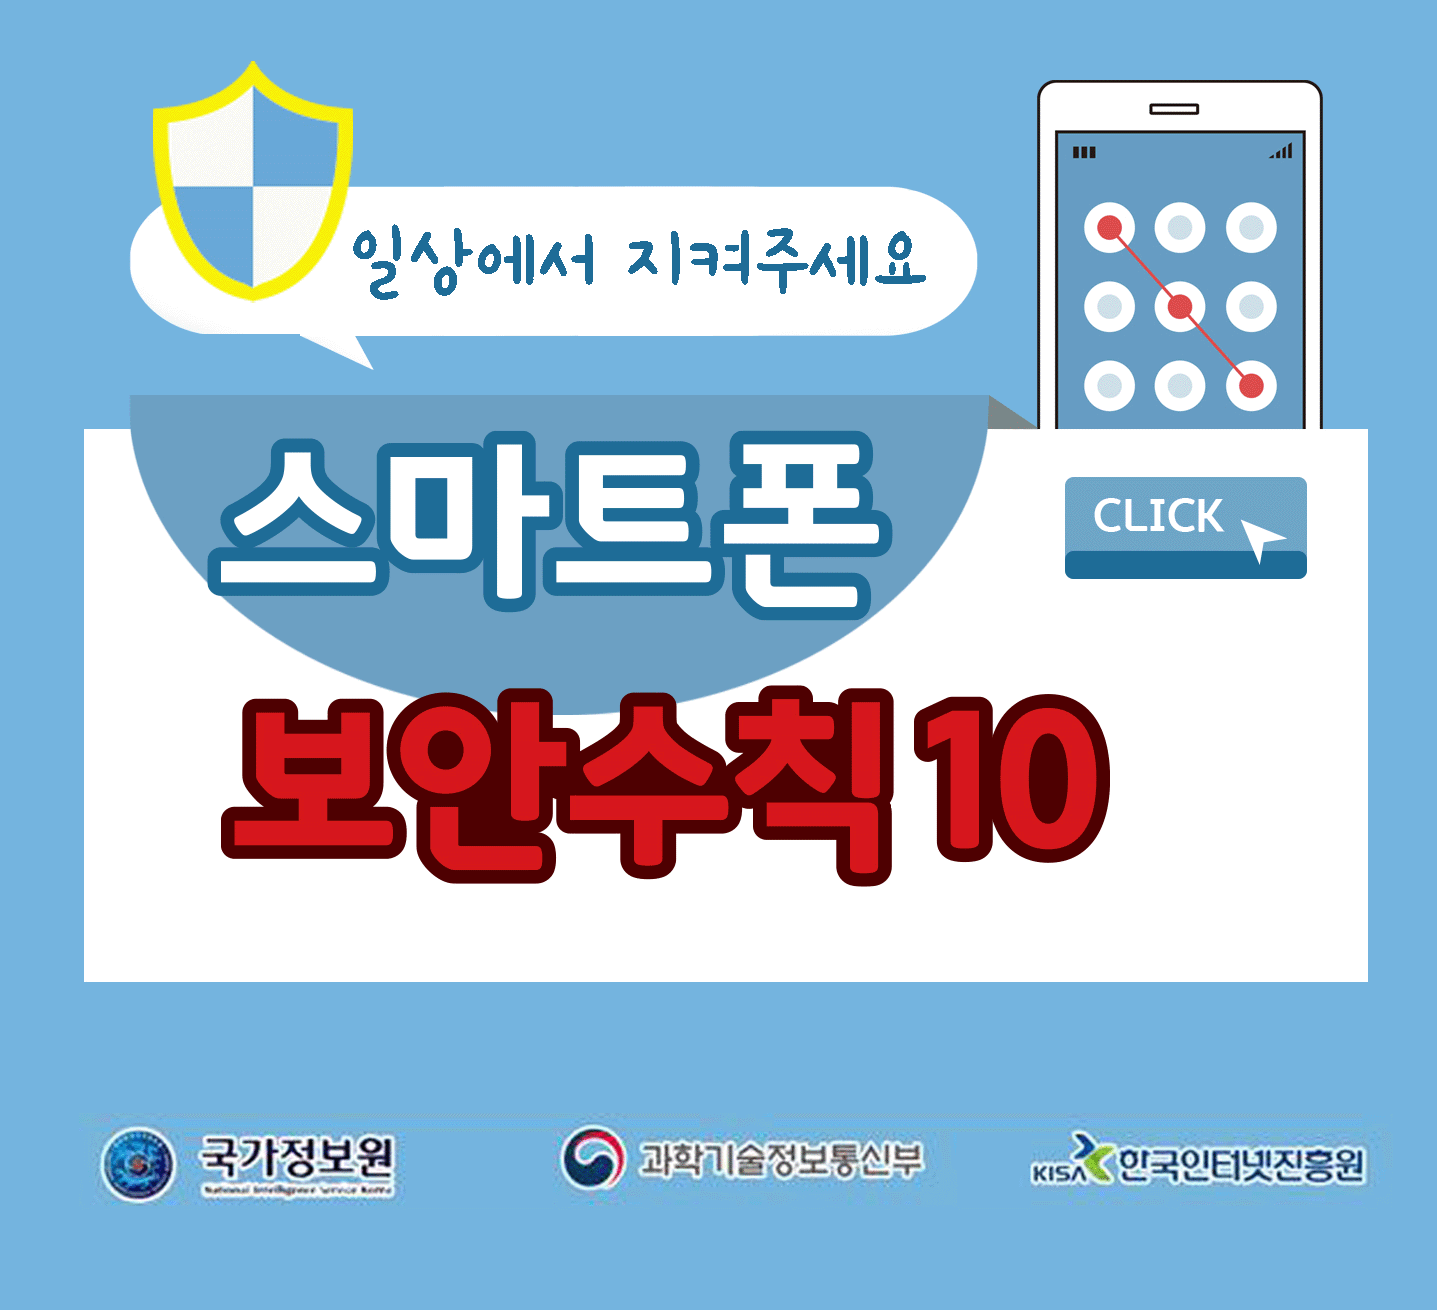 일상에서 지켜주세요
스마트폰 보안수칙 10 CLICK
국가정보원, 과학기술정보통신부, 한국인터넷진흥원;jsessionid=663F0D458DC37FB38CB71A0B4D50B443